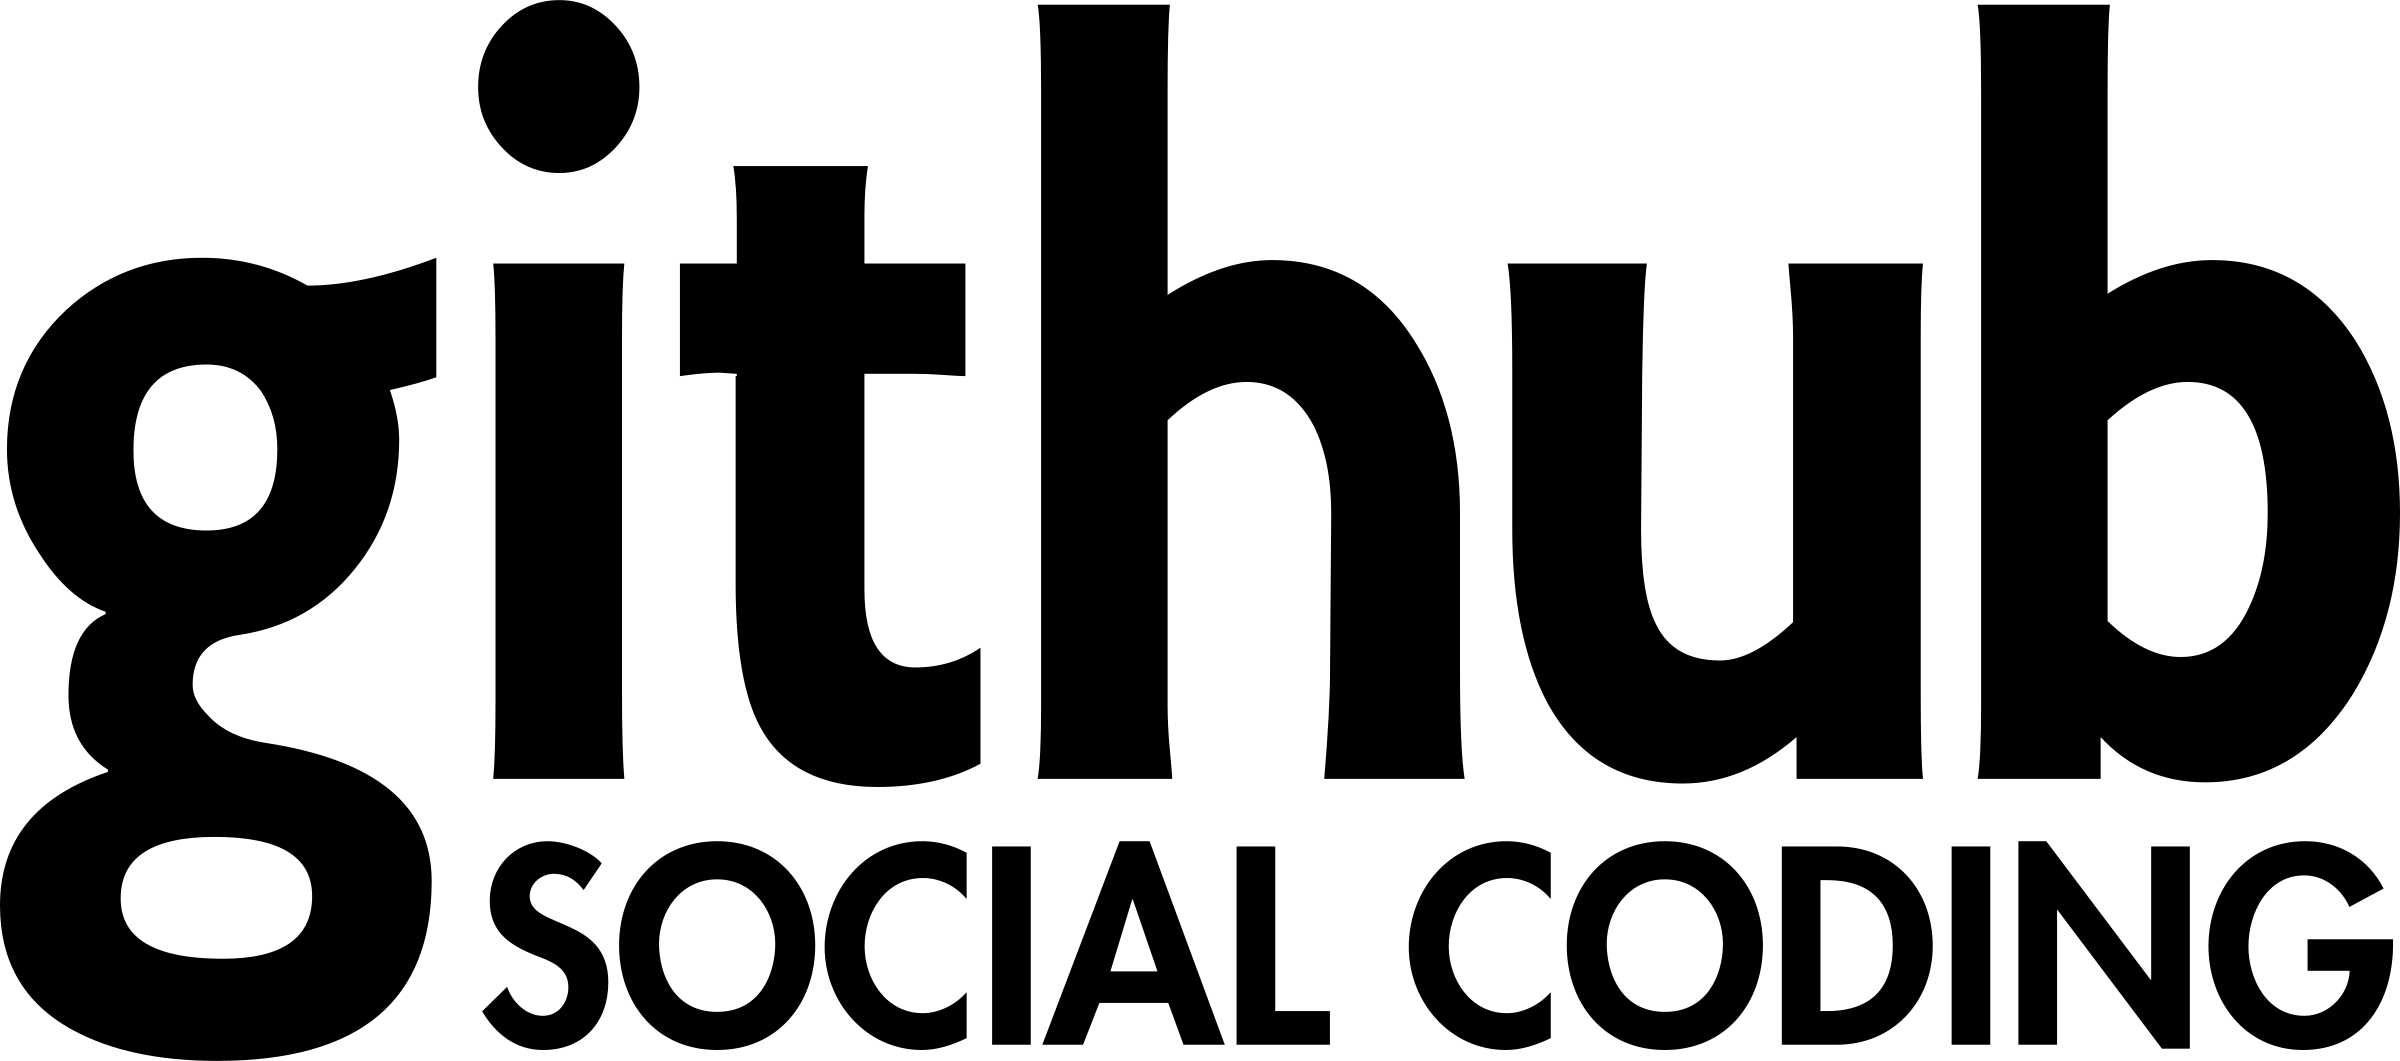 Github Logo PNG Background Image